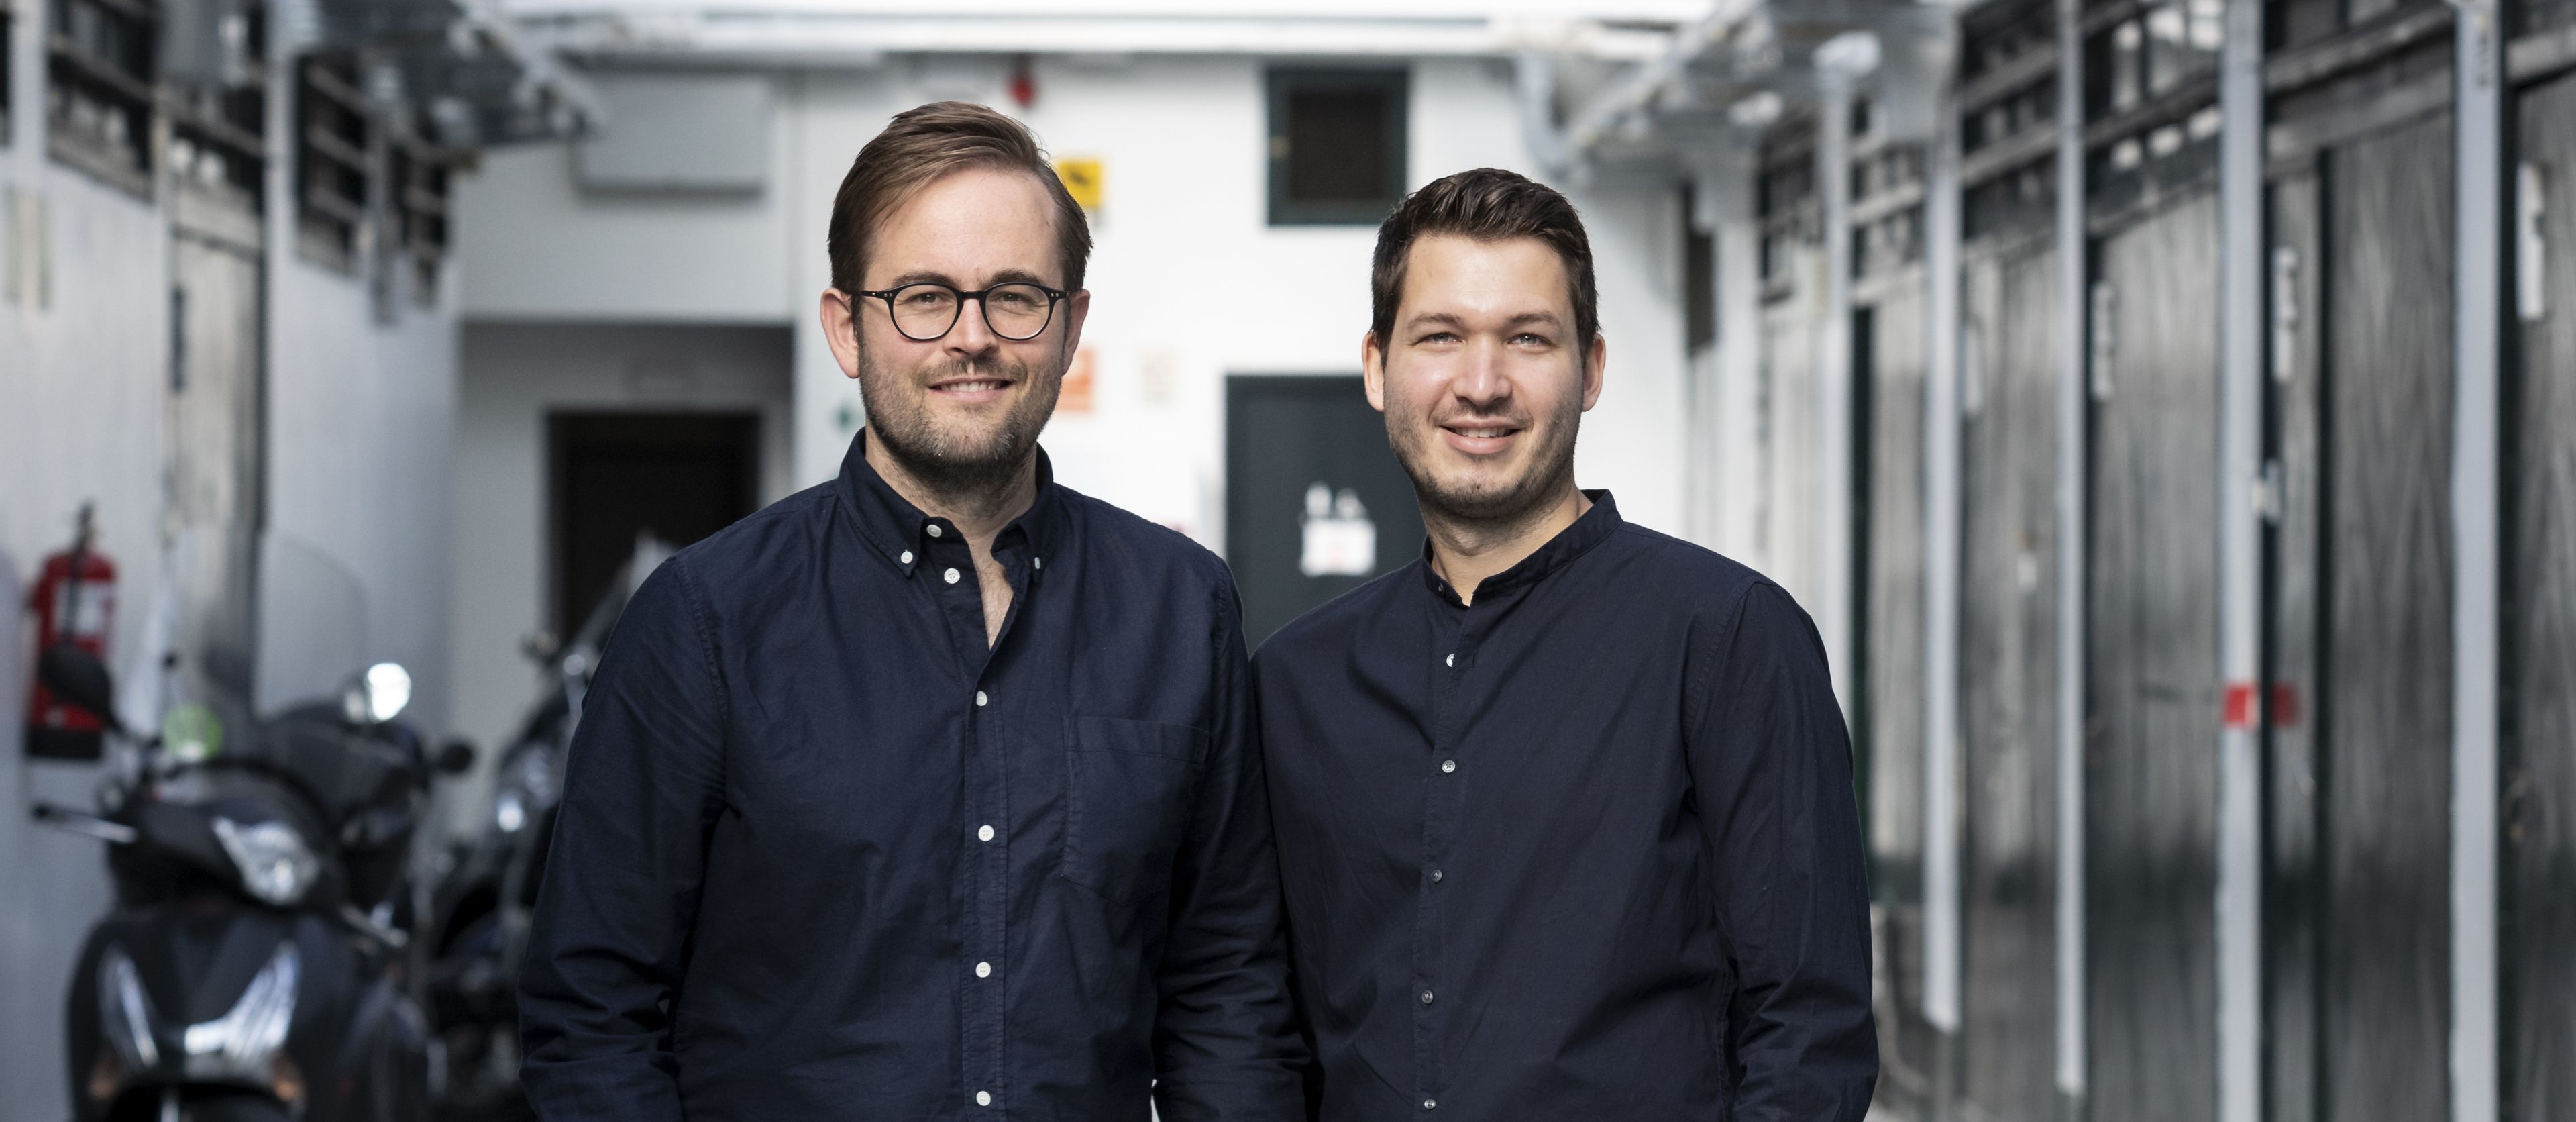 De izquierda a derecha, Christopher Cederskog y Stefan Braun, cofundadores de Sunhero.